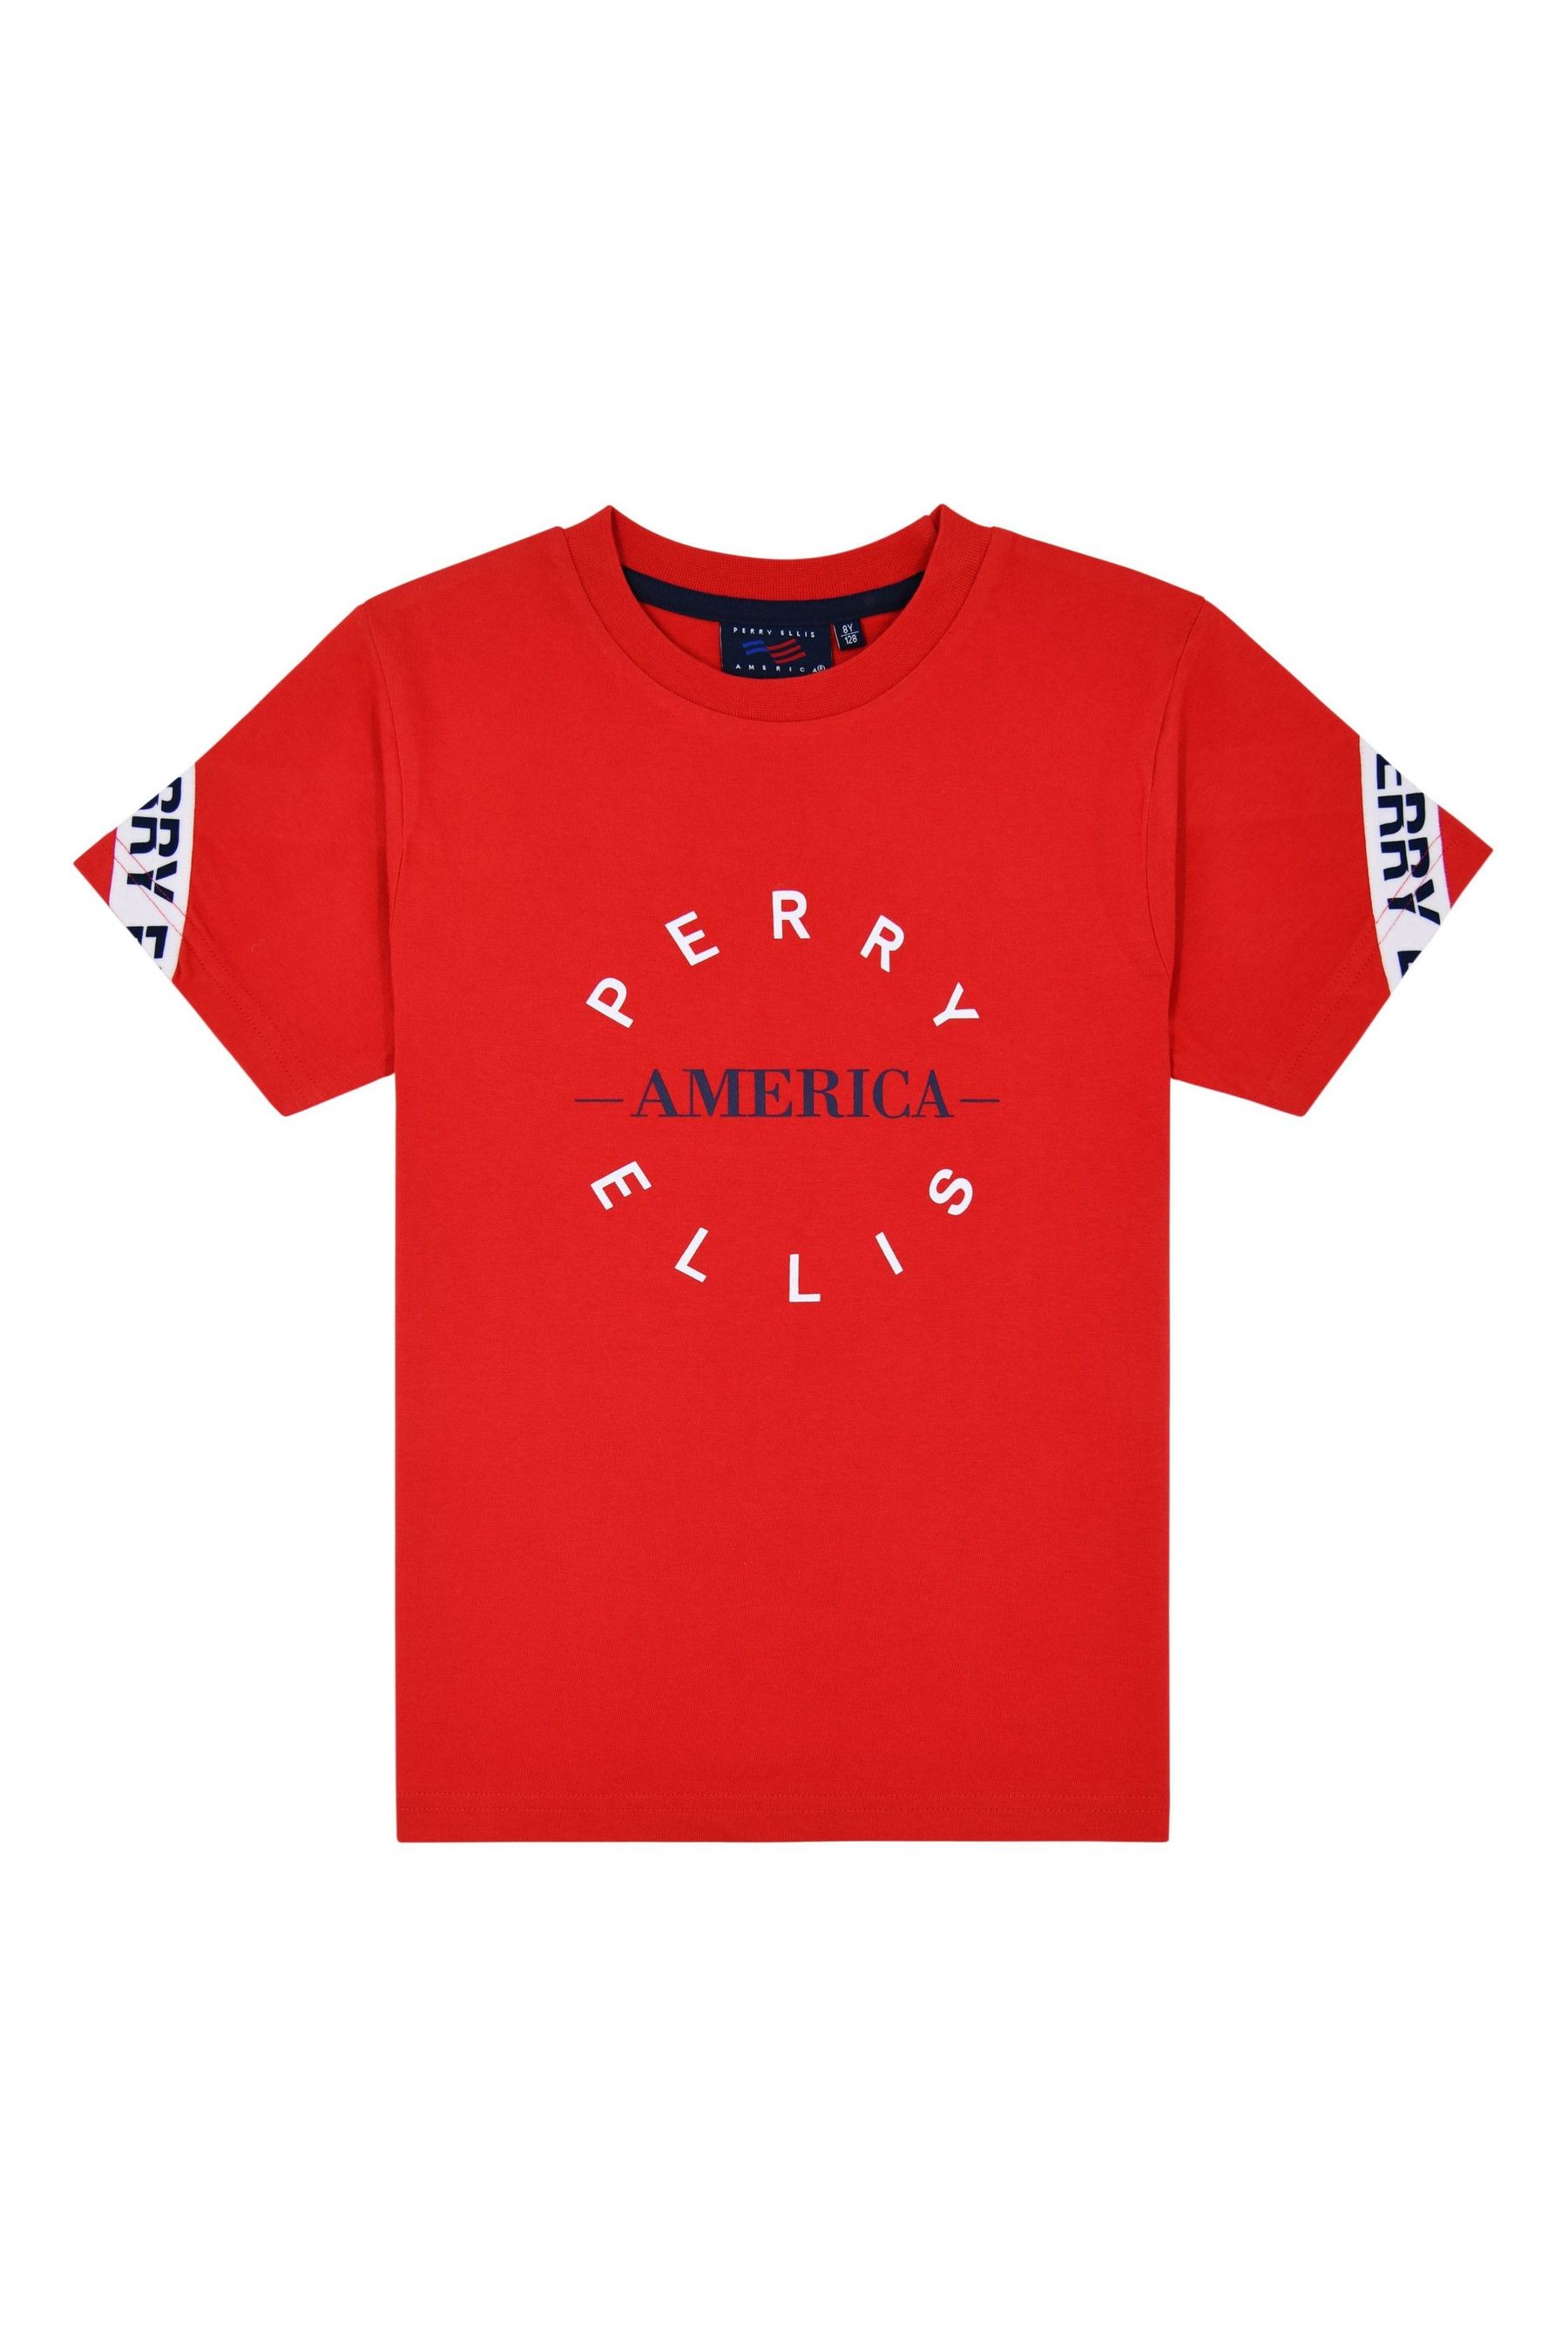 Красная футболка Perry Ellis America, красный